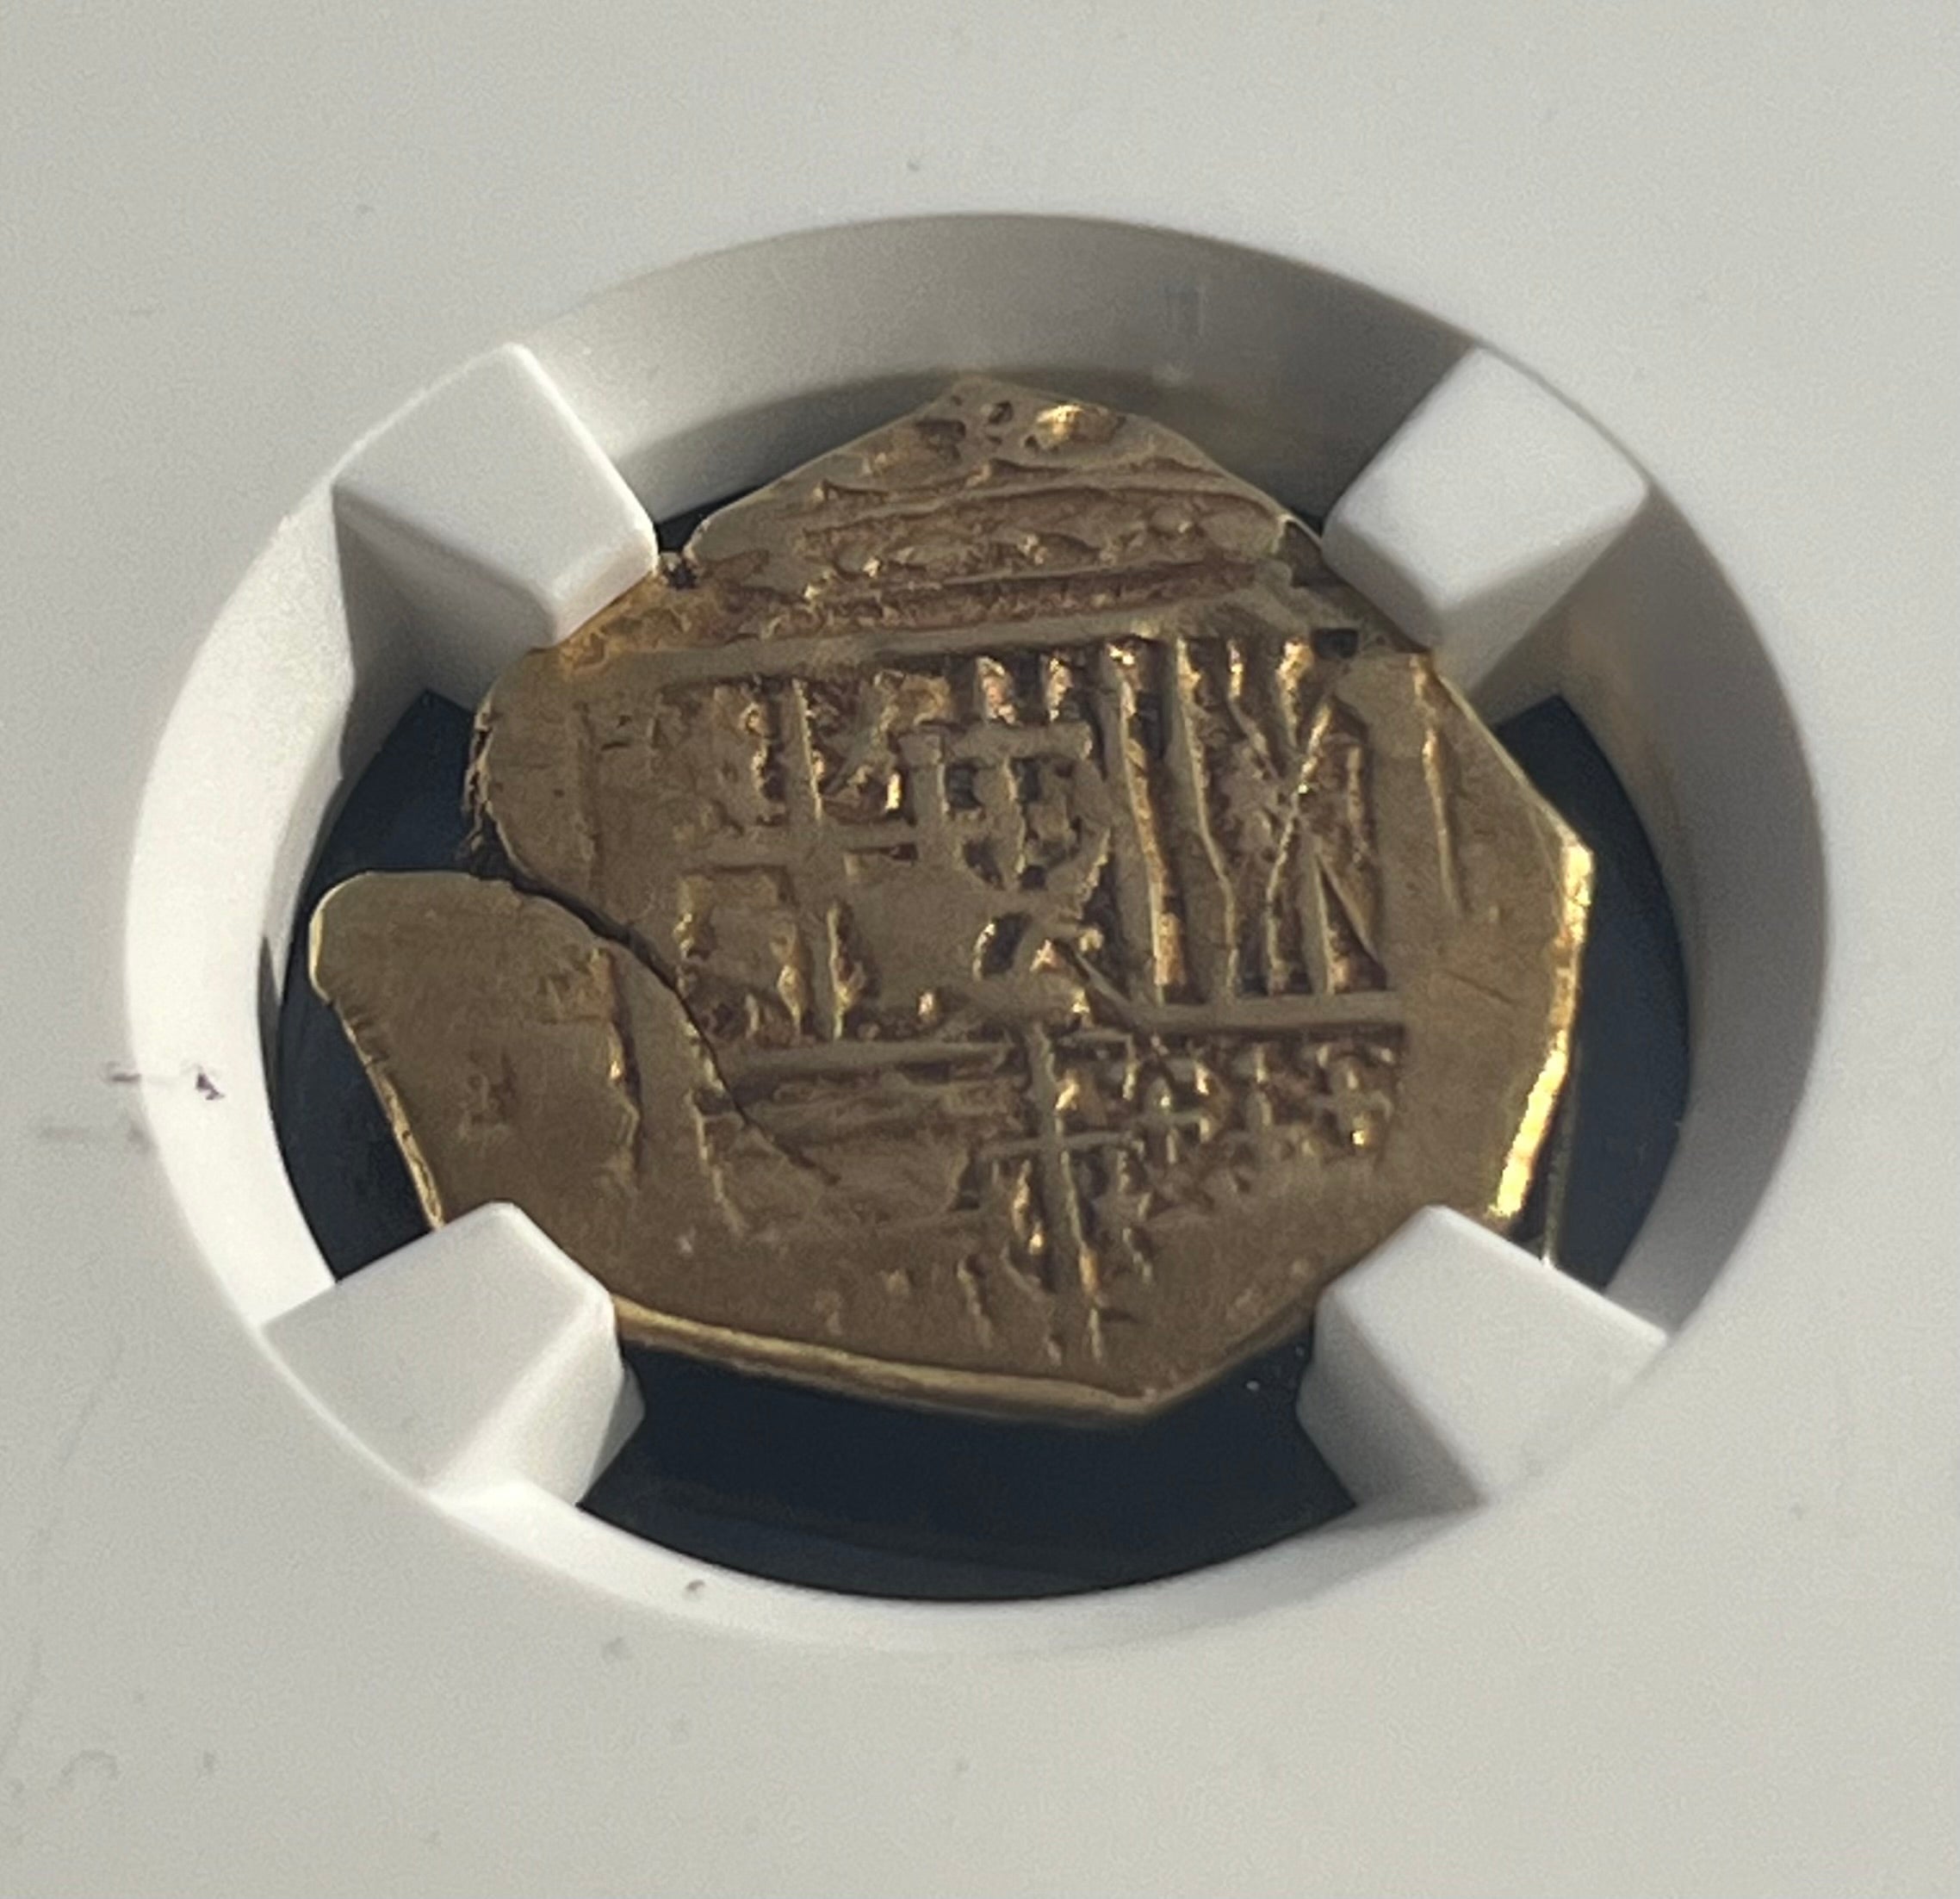 2 Escudos Seville, Spain Gold Coin NGC Grade XF Details (1556-98)